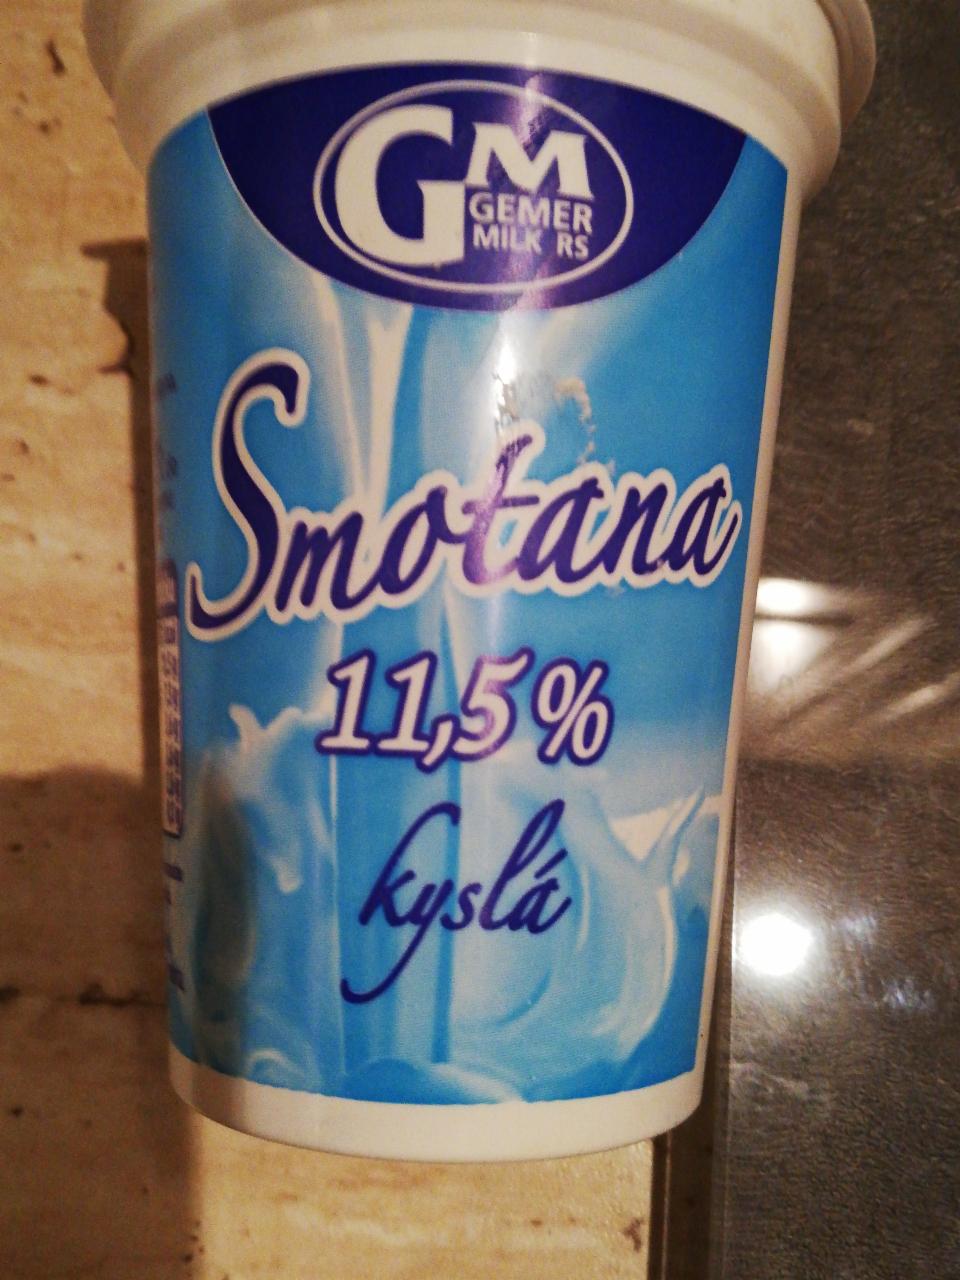 Fotografie - Smotana kyslá 11,5% Gemer milk